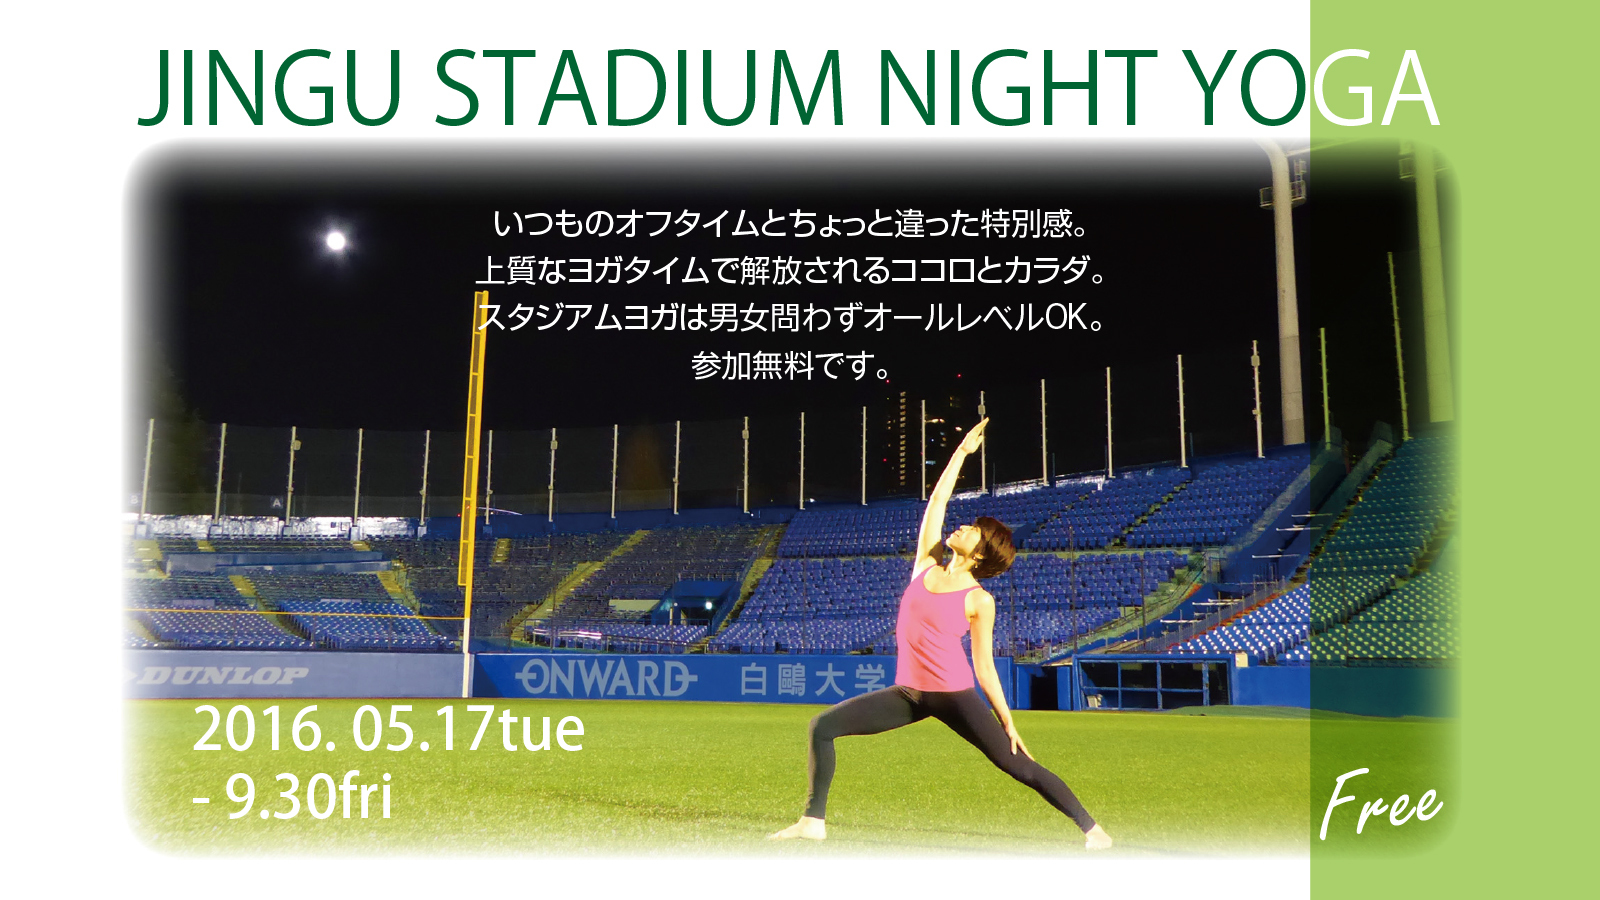 神宮球場の空き時間を活用したヨガイベント Jingu Stadium Night Yogaを5月17日から全10回で開催 参加費無料でアクティブライフをサポート 株式会社rights のプレスリリース